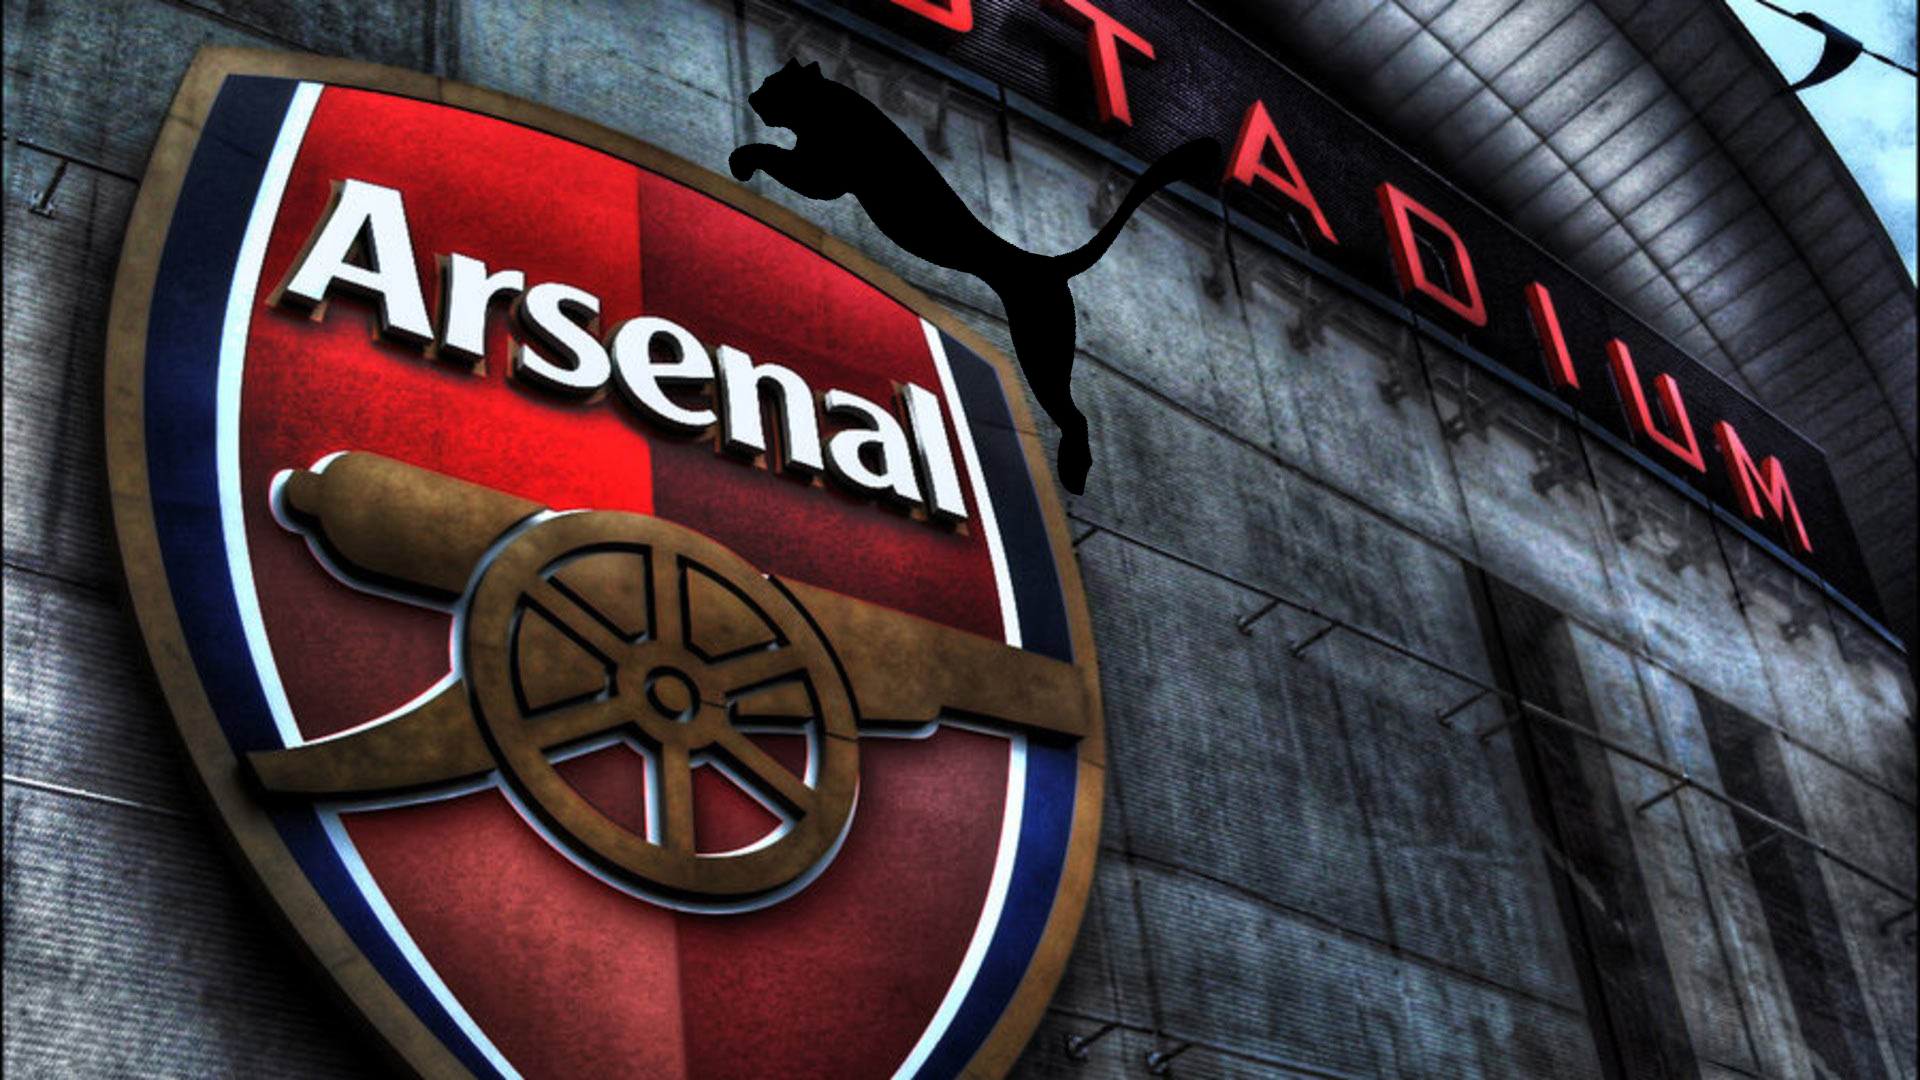 Le nouveau deal Arsenal – Puma